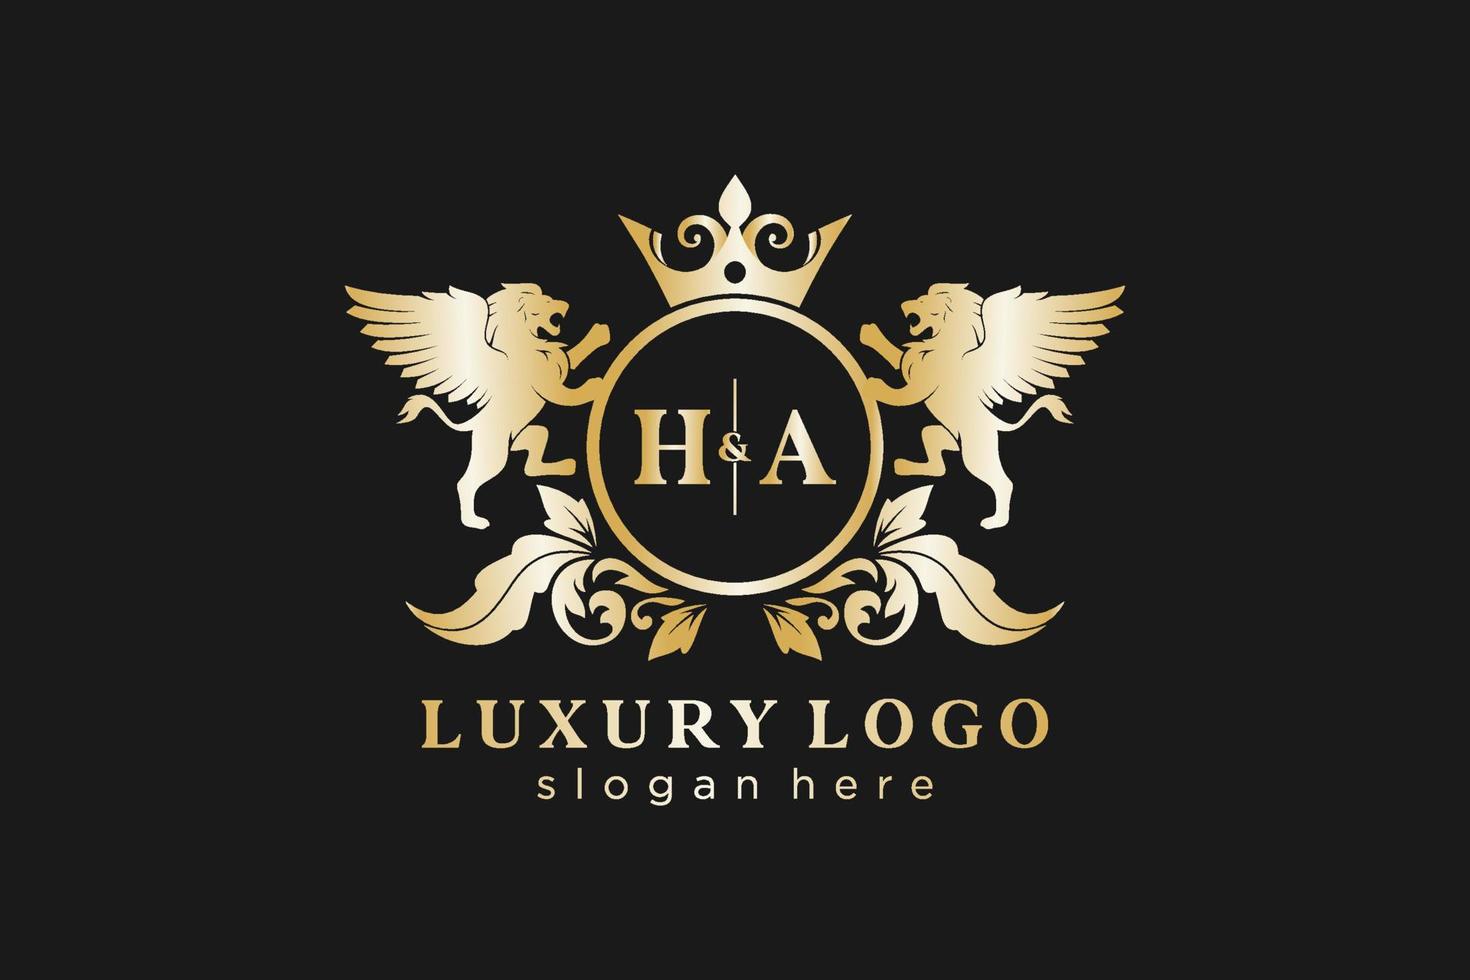 Initial hs Letter Lion Royal Luxury Logo Vorlage in Vektorgrafiken für Restaurant, Lizenzgebühren, Boutique, Café, Hotel, Heraldik, Schmuck, Mode und andere Vektorillustrationen. vektor